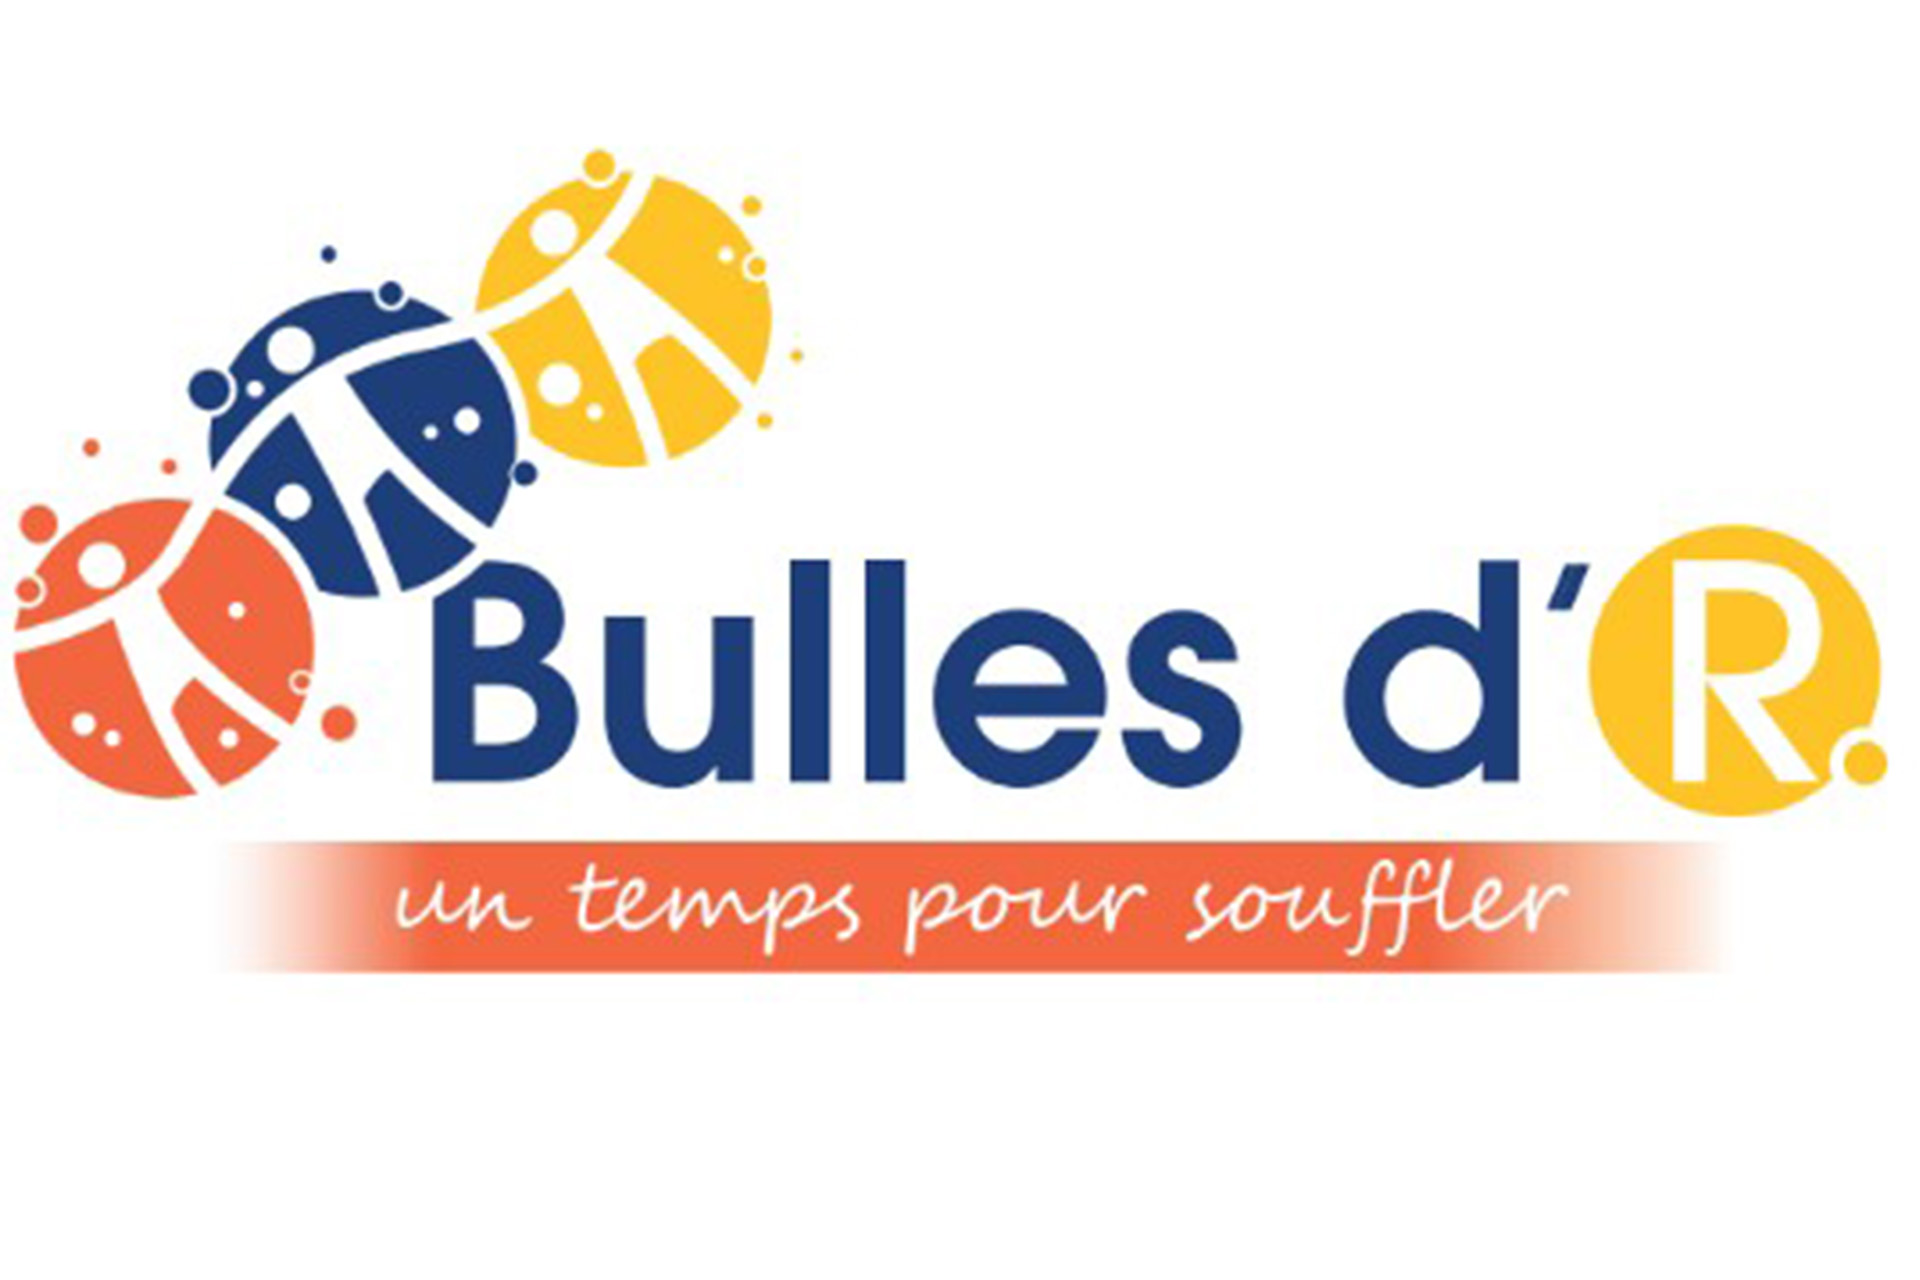 bulles-dr.jpg